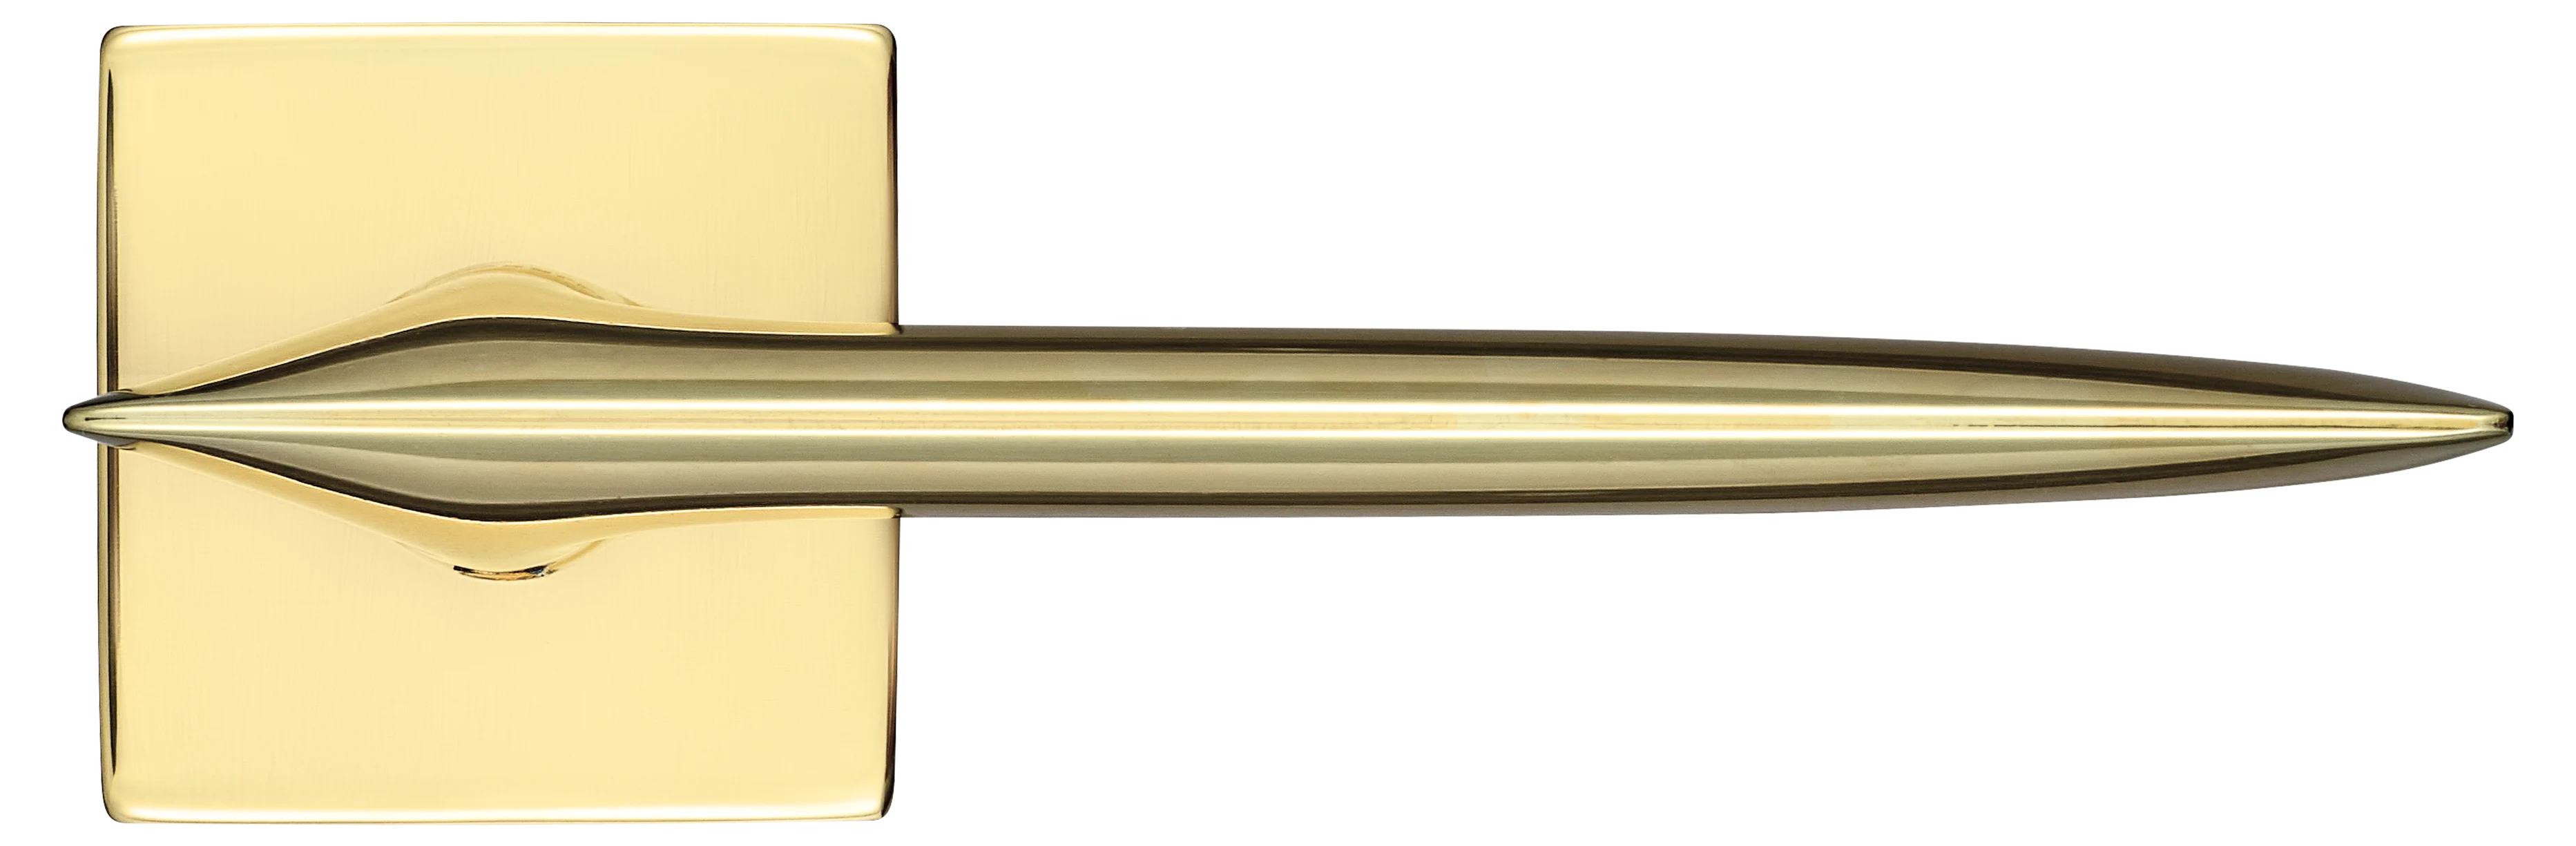 GALACTIC S5 OTL, ручка дверная, цвет -  золото фото купить в Краснодаре